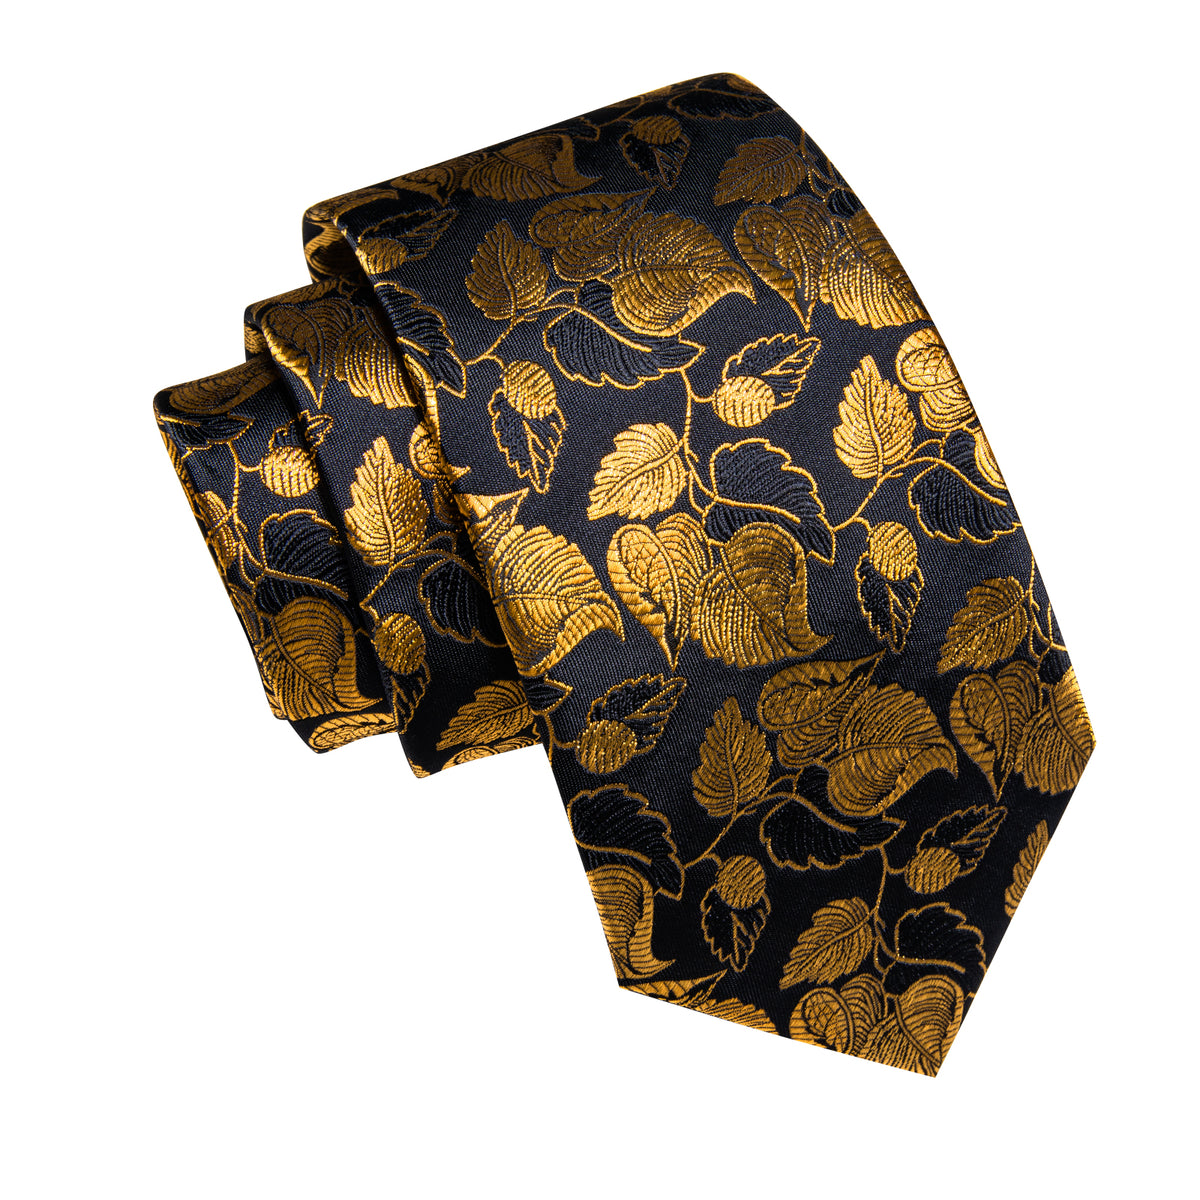 Black Gold Floral Leaf Men's Necktie Pocket Square Cufflinks Set